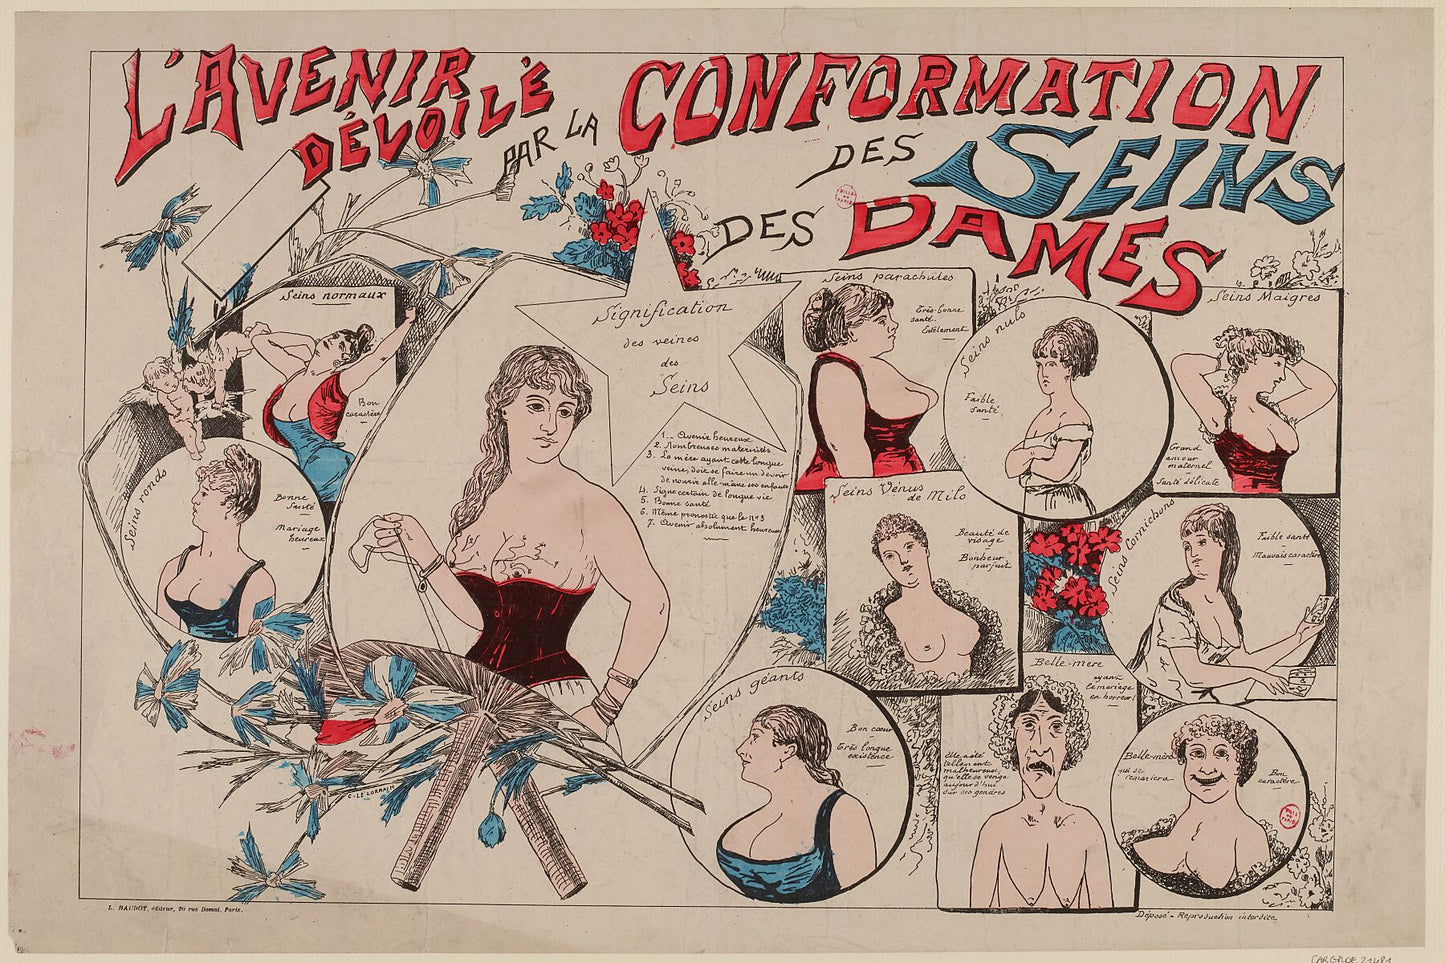 El futuro revelado por la forma de los senos de las mujeres, anónimo - c.1890 